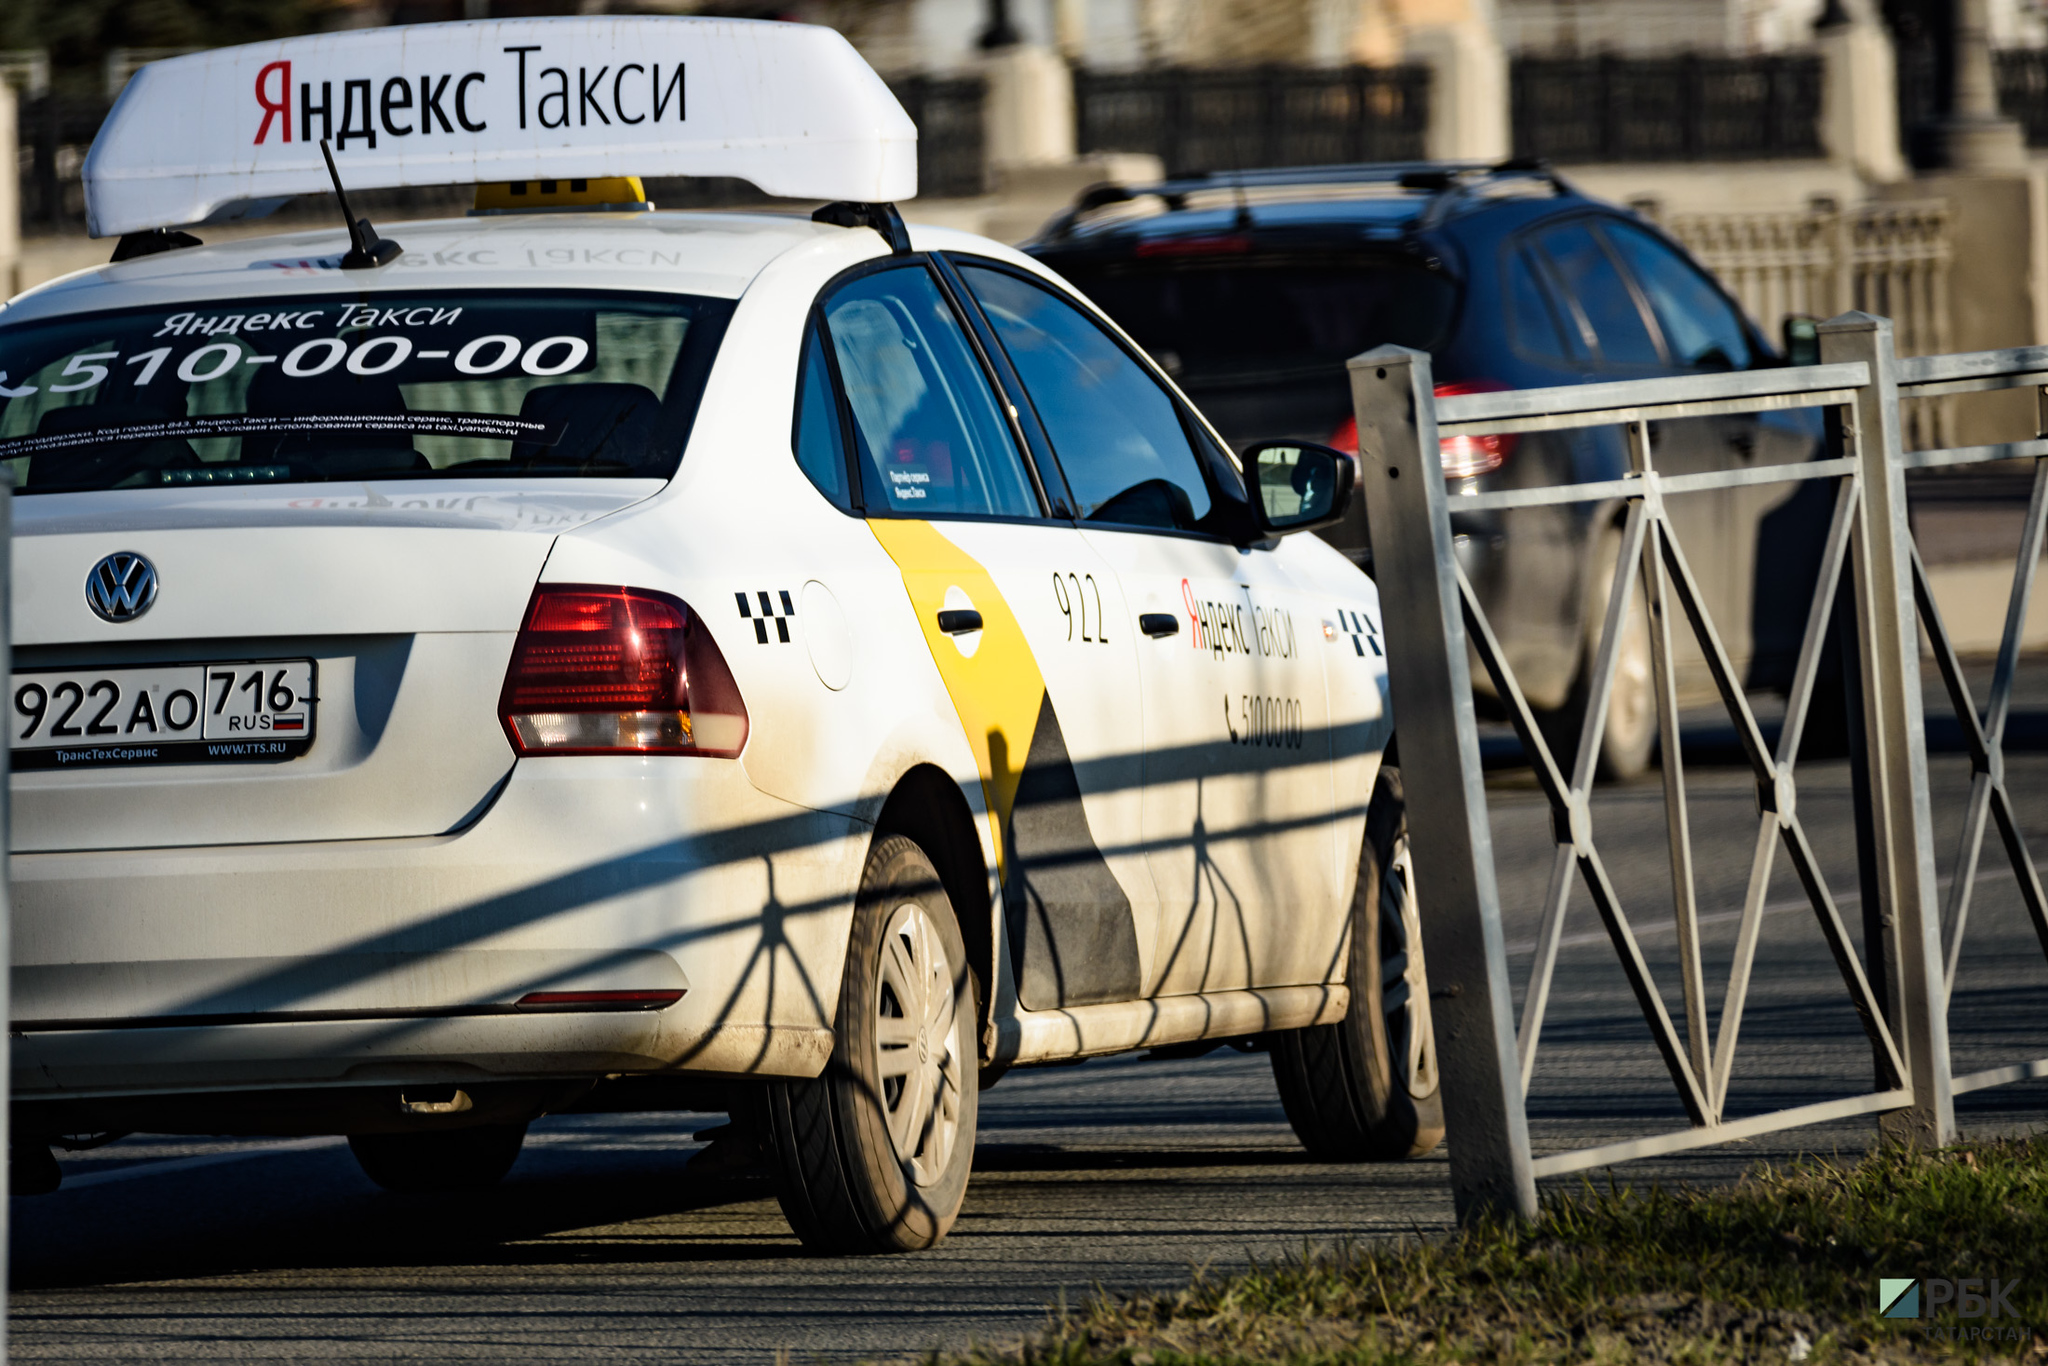 Таксисты Казани устроили забастовку из-за низких тарифов на поездки